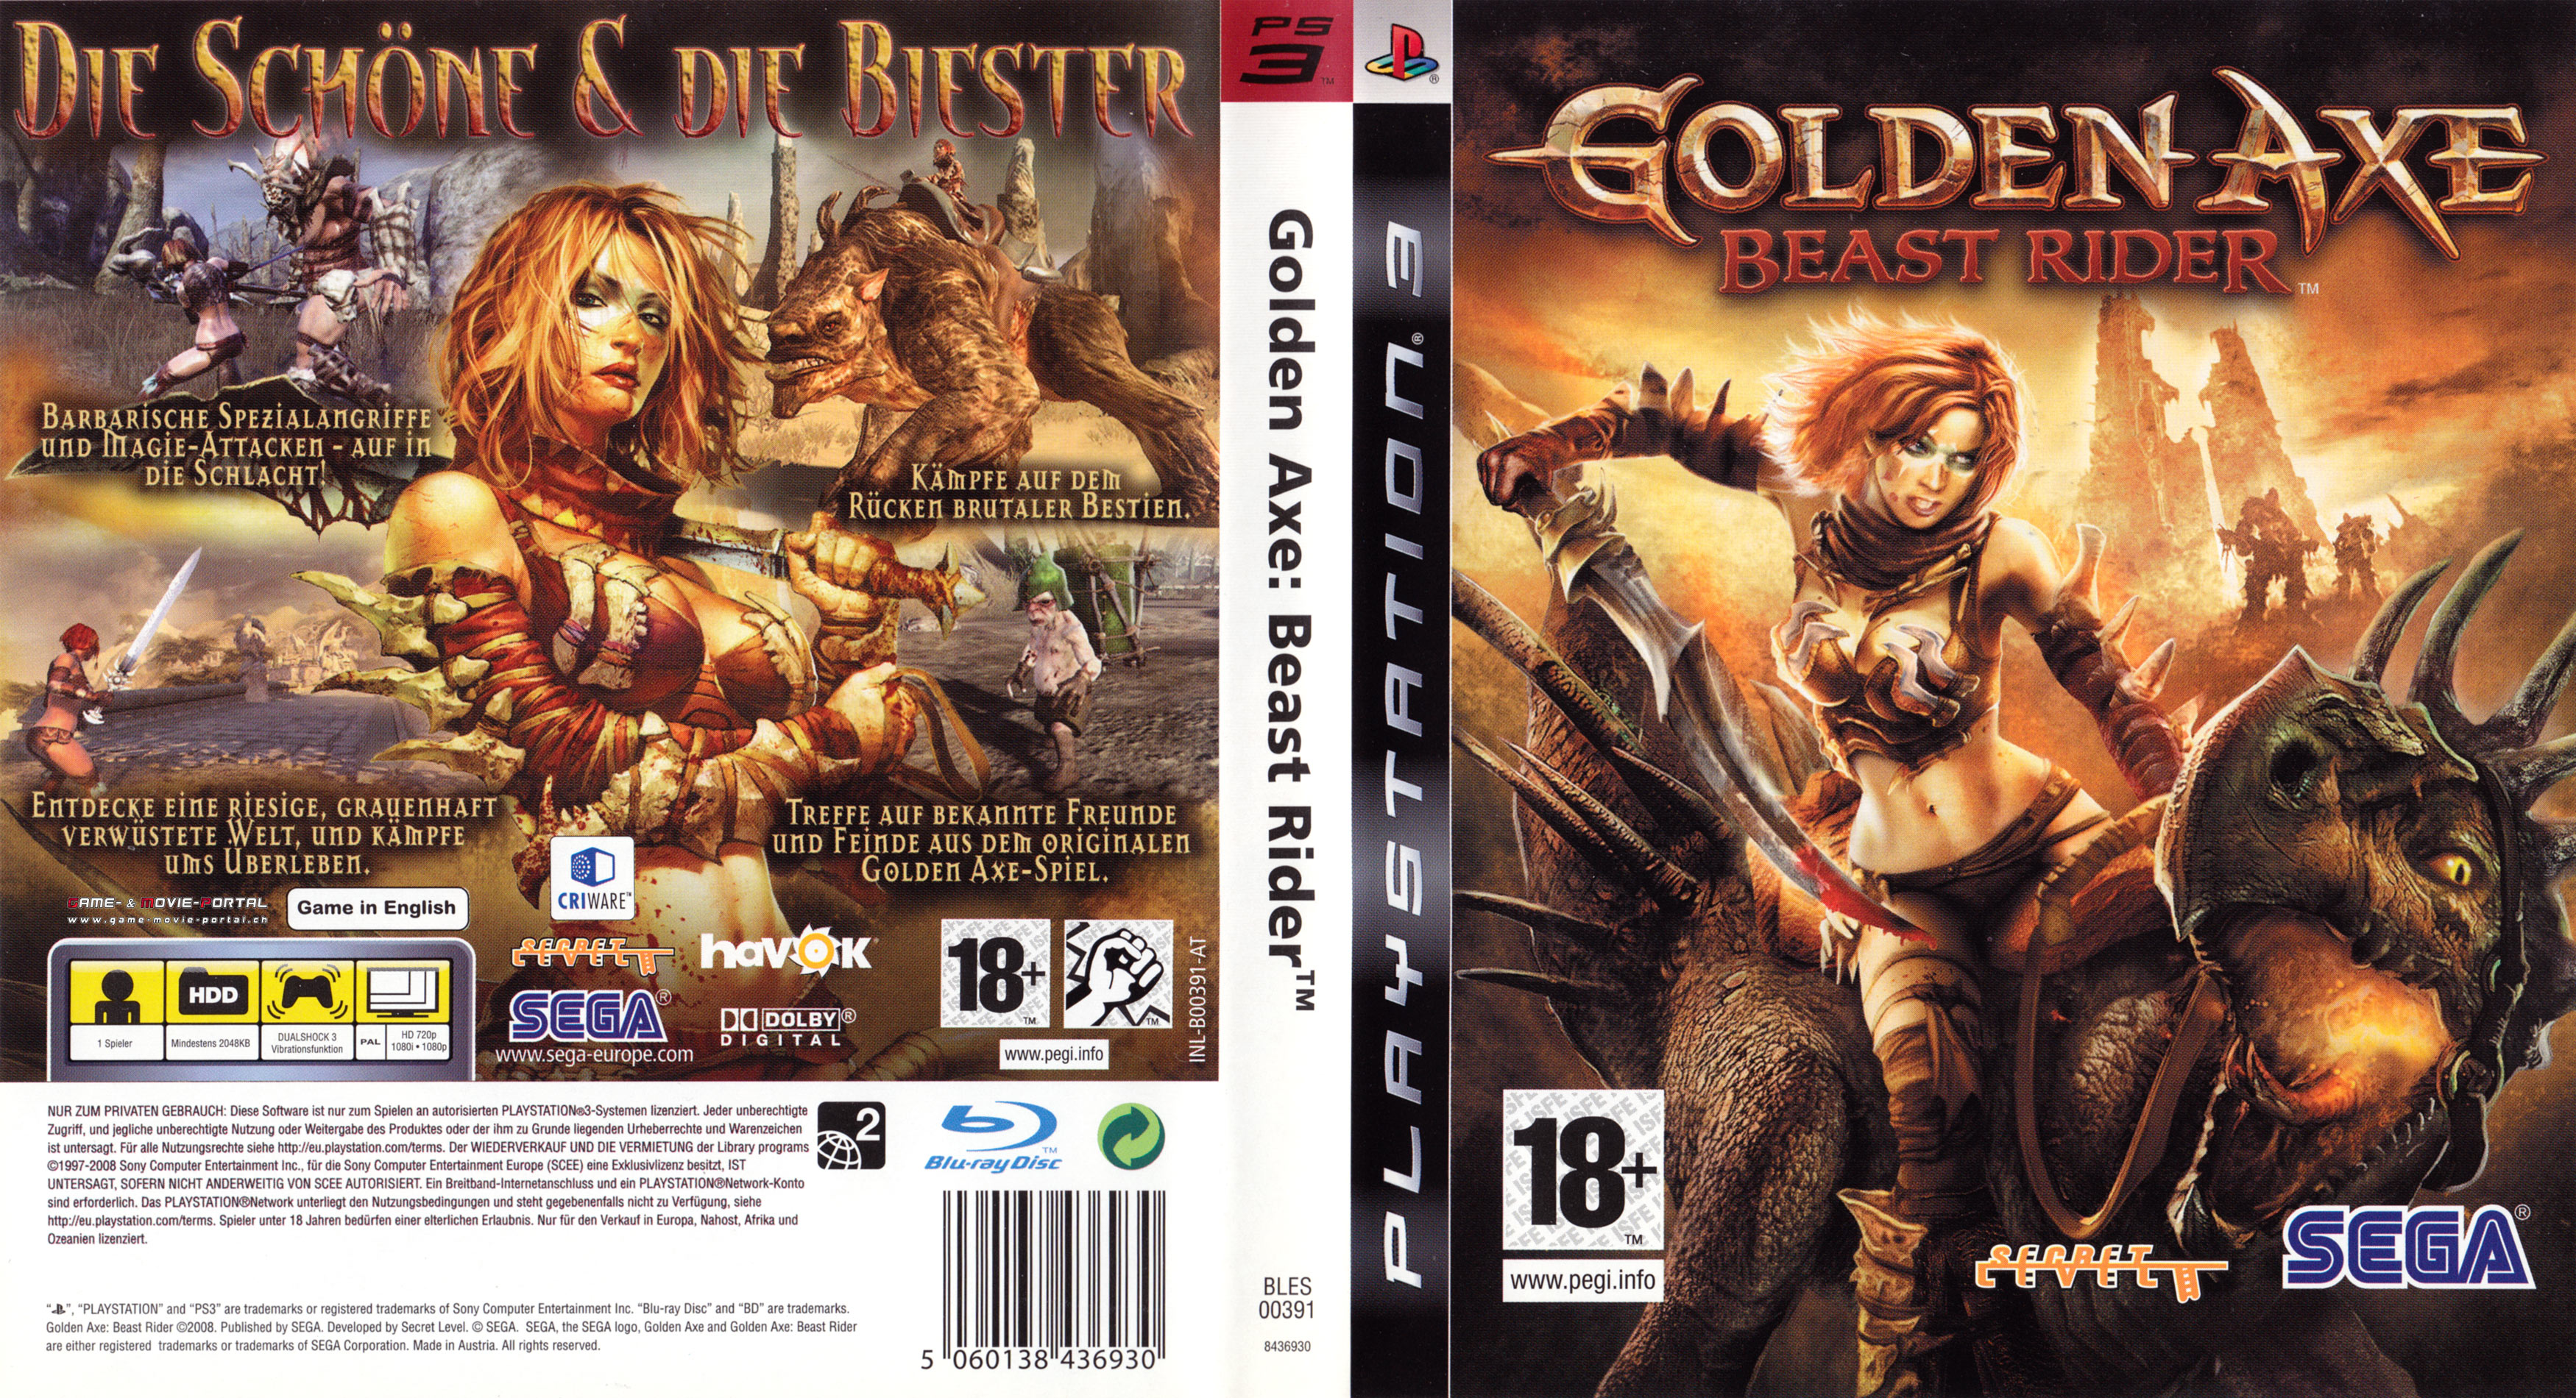 golden axe beast rider 360 desert